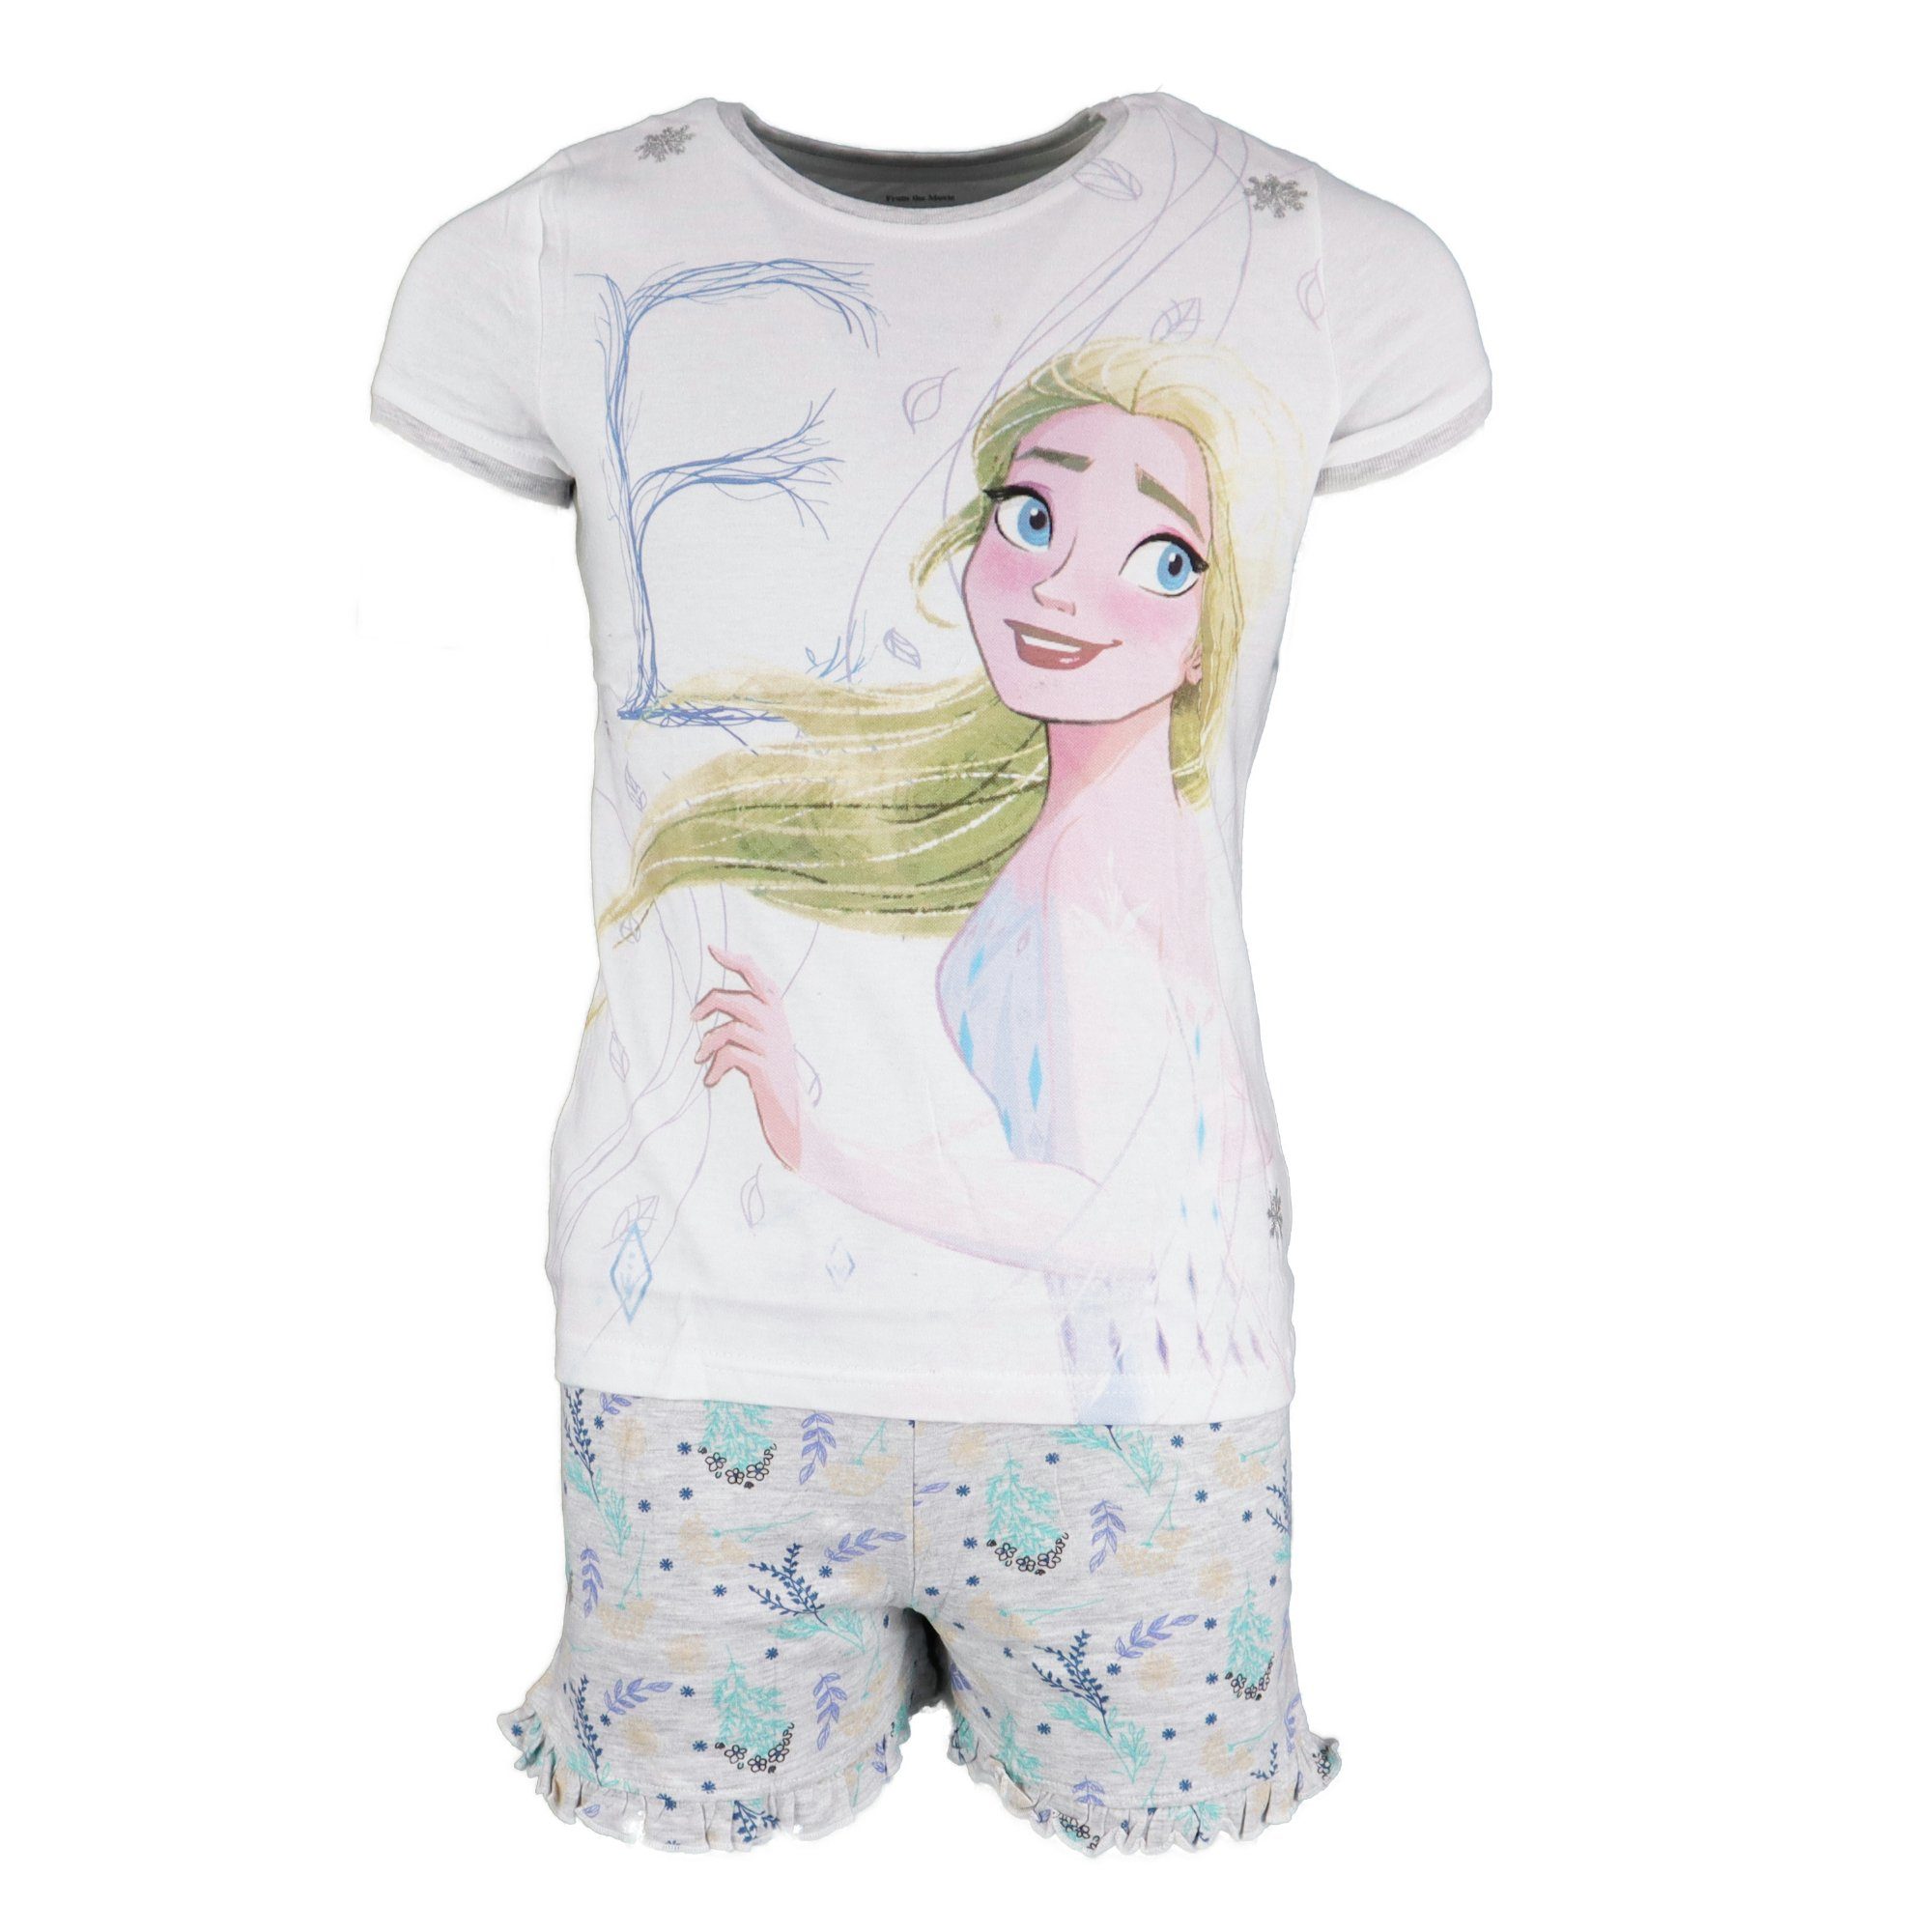 Disney Frozen Schlafanzug Die Eiskönigin Elsa Mädchen Kinder kurzarm Pyjama Gr. 104 bis 134, Grau oder Lila